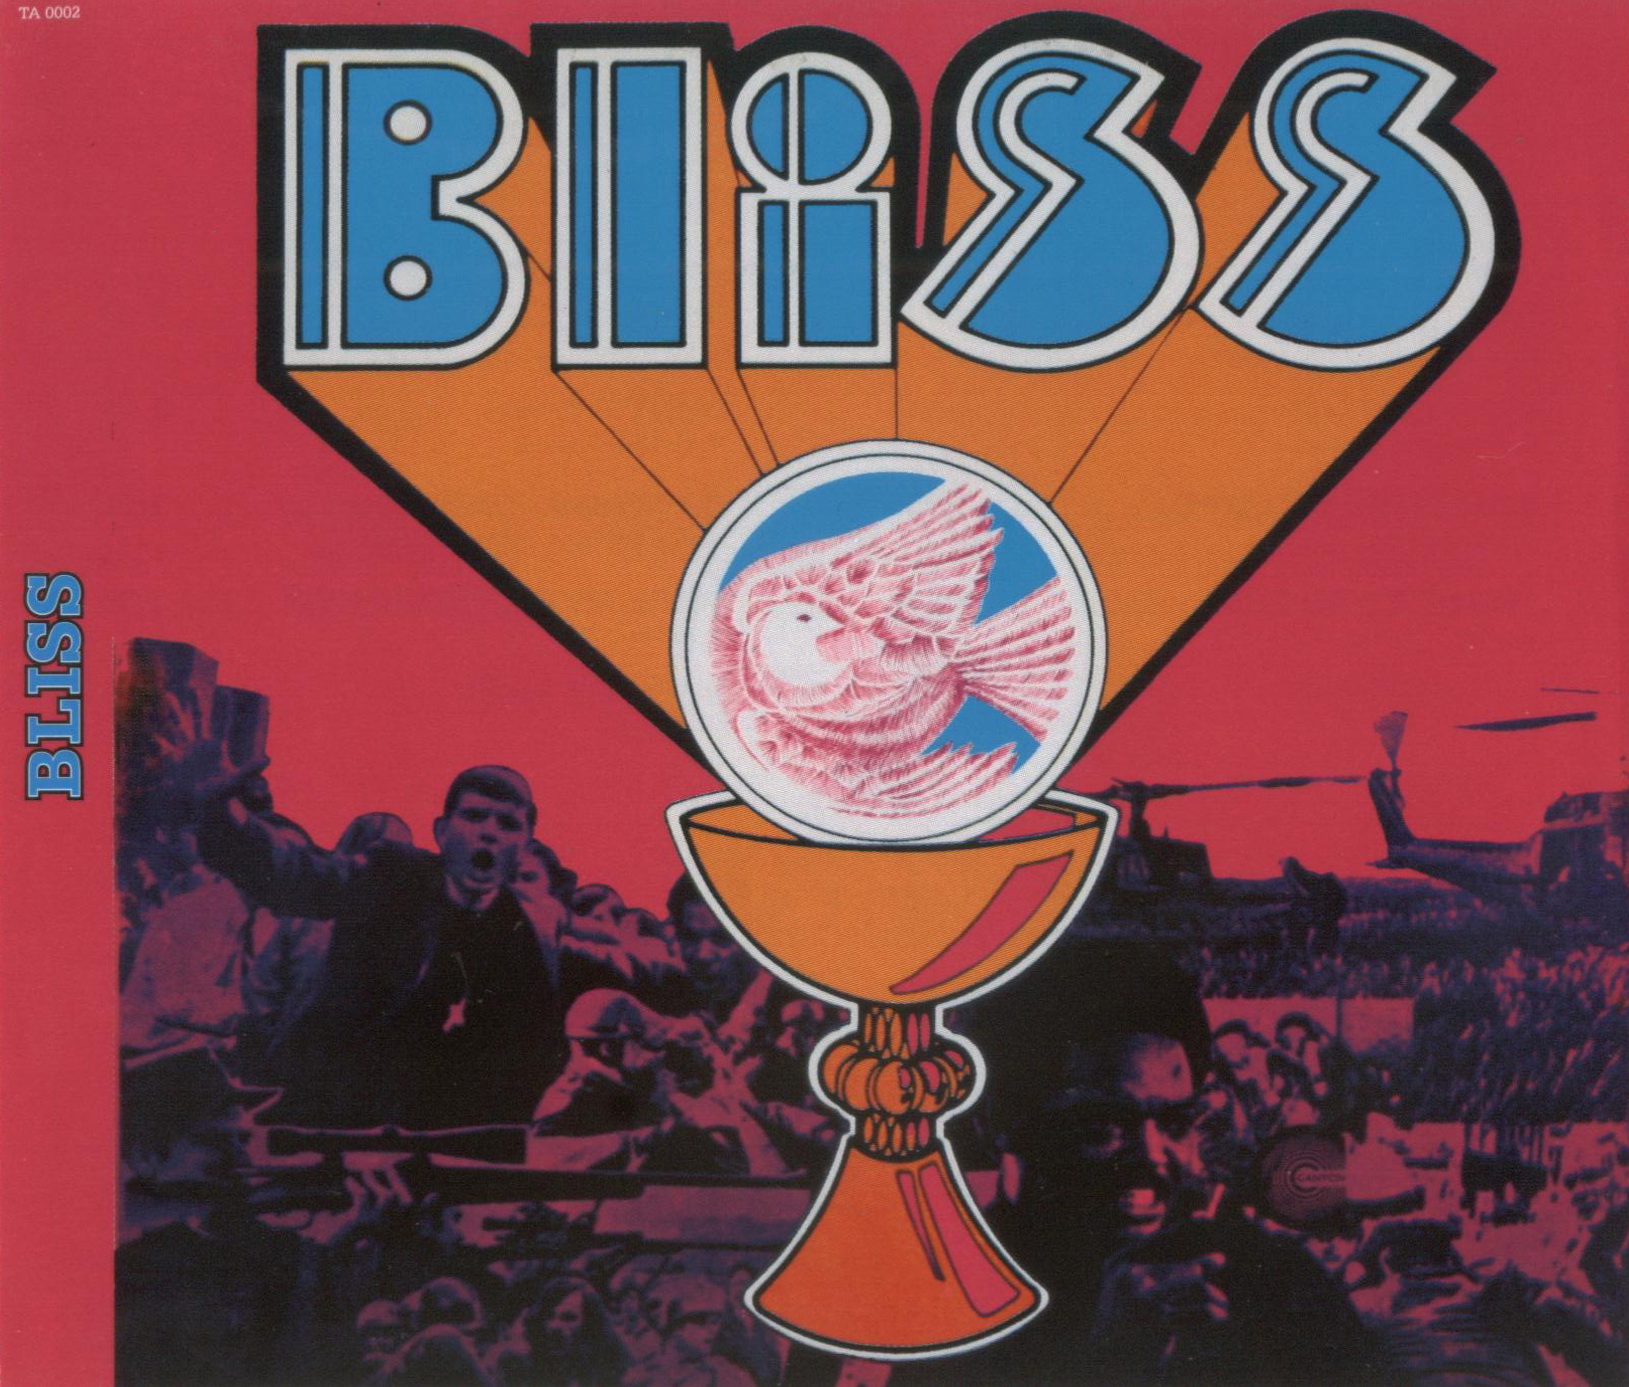 Bliss - Bliss 1969